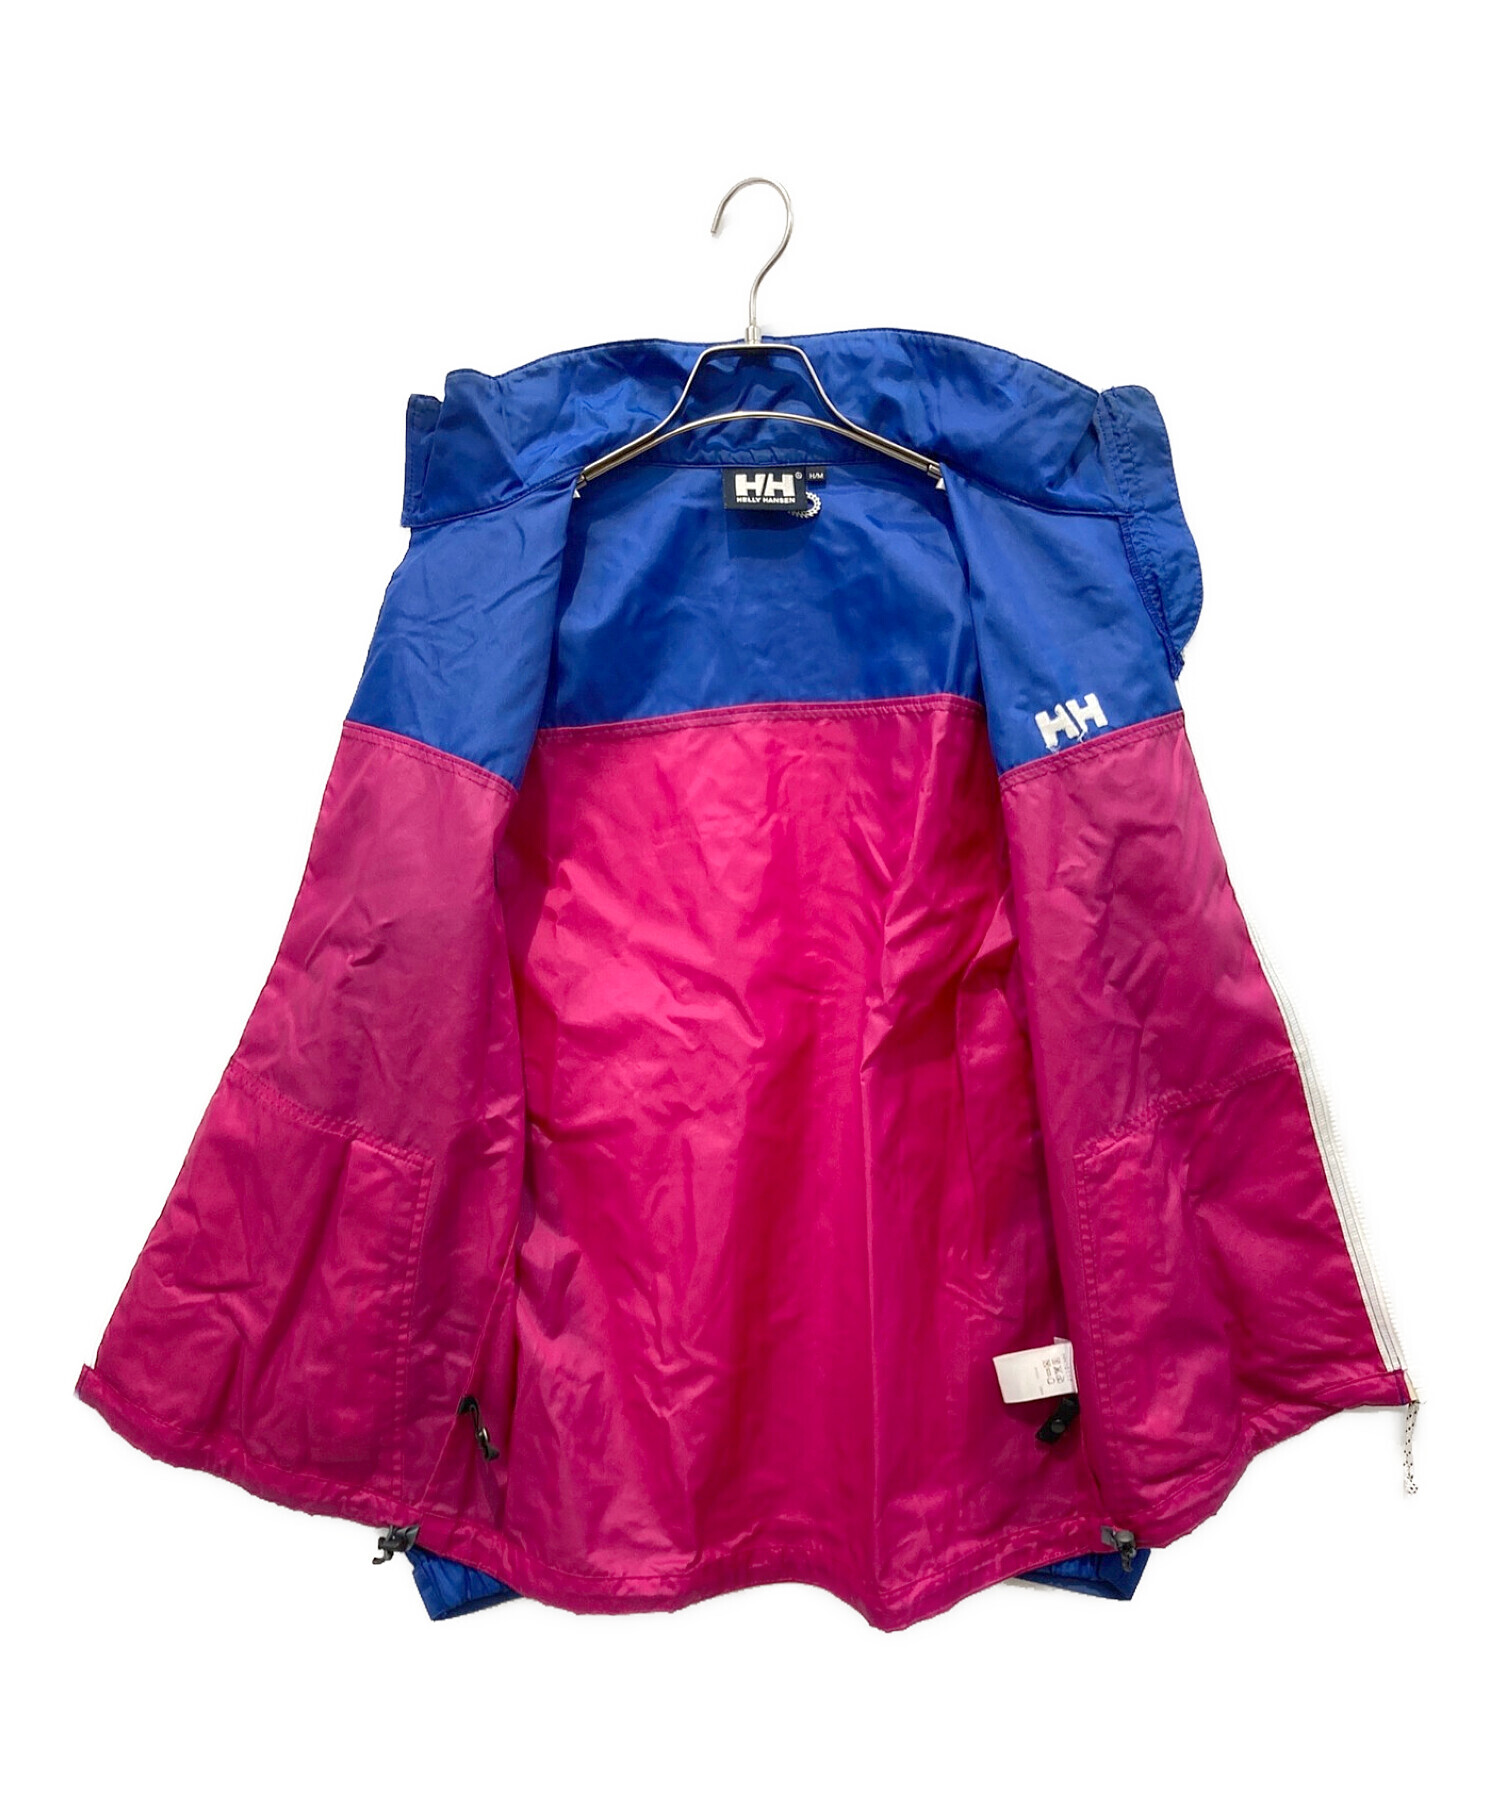 HELLY HANSEN (ヘリーハンセン) ナイロンジャケット ブルー×ピンク サイズ:M